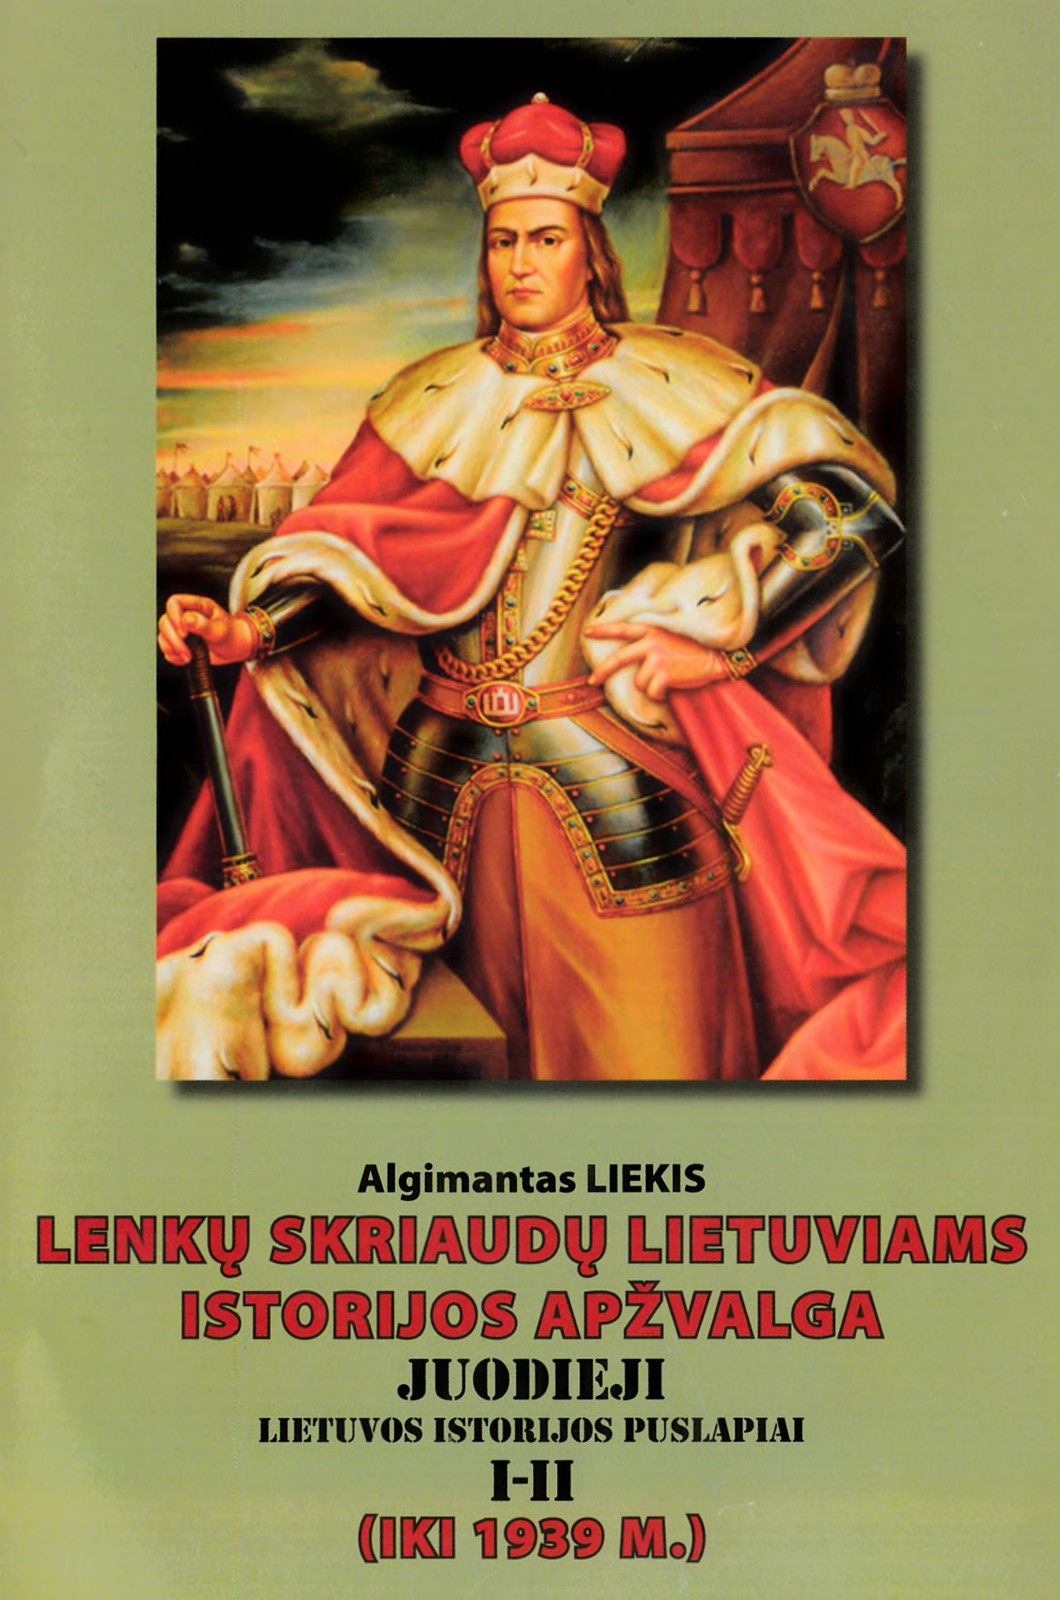 Lenkų skriaudų lietuviams istorijos apžvalga